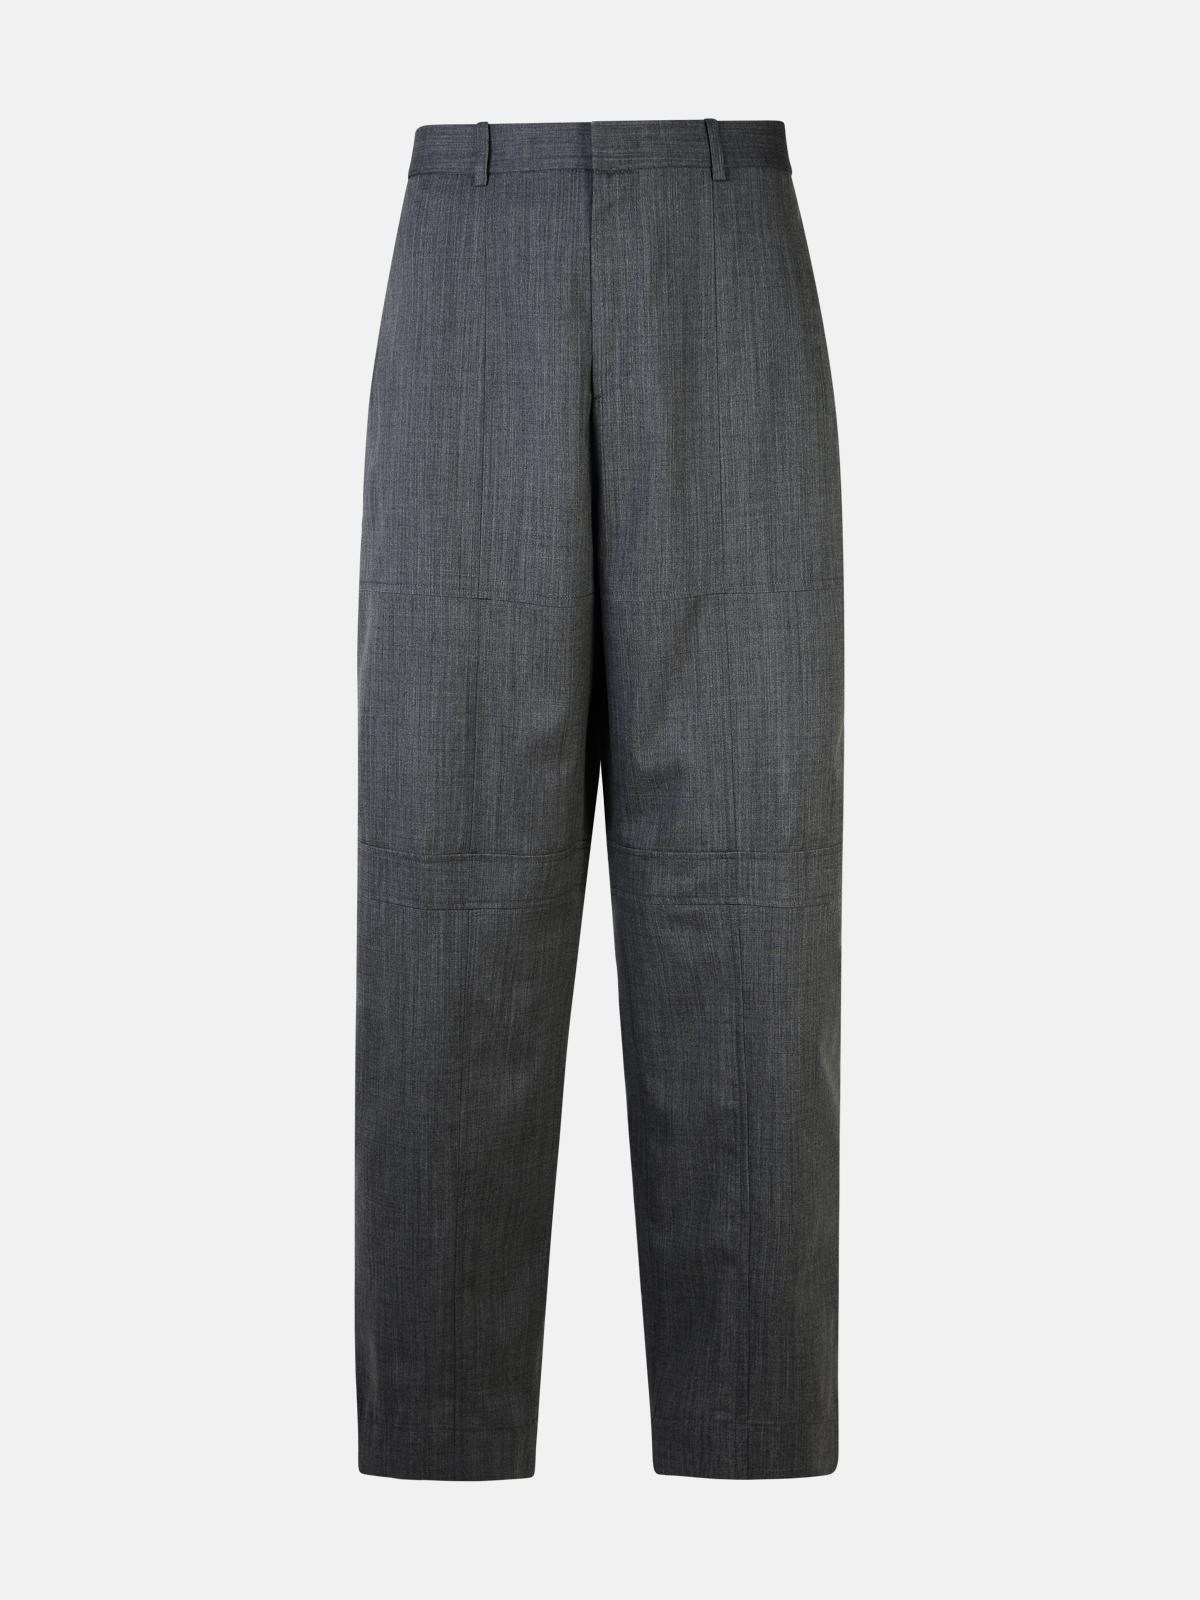 Jil Sander Grey Wool Trousers In Gray